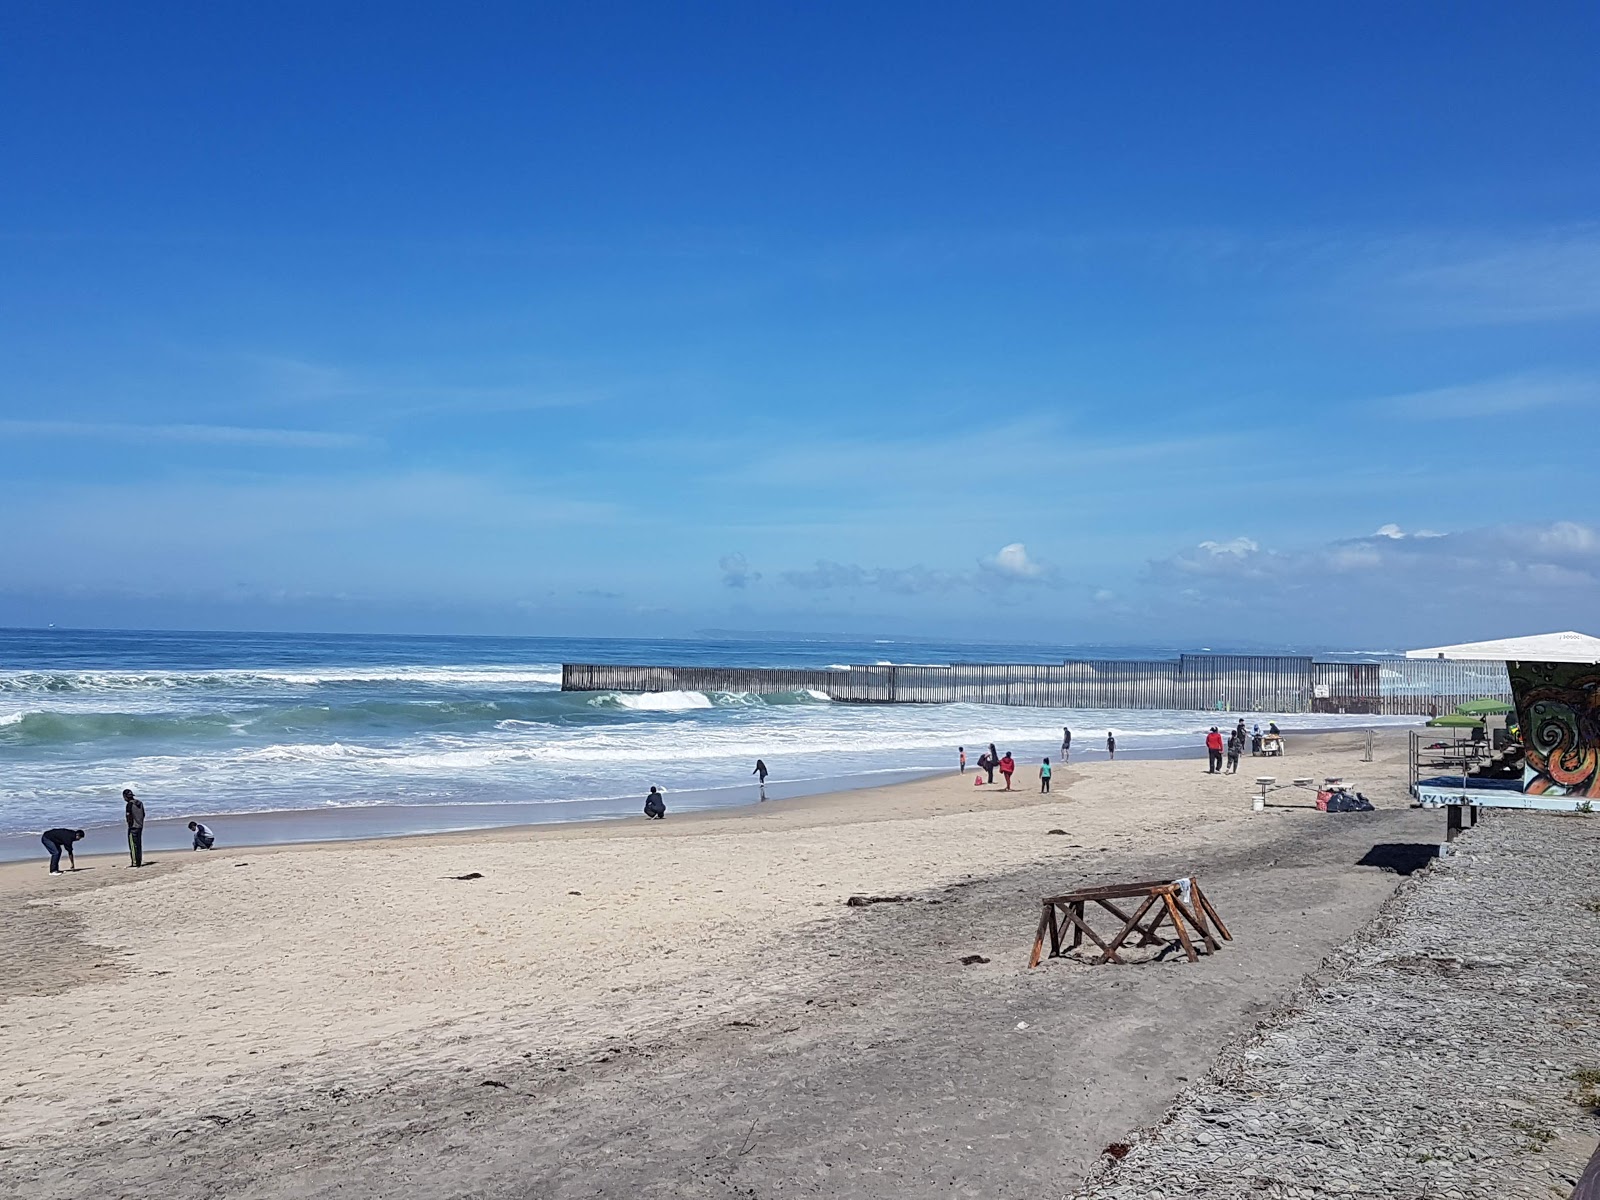 Playa de Tijuana'in fotoğrafı kahverengi kum yüzey ile